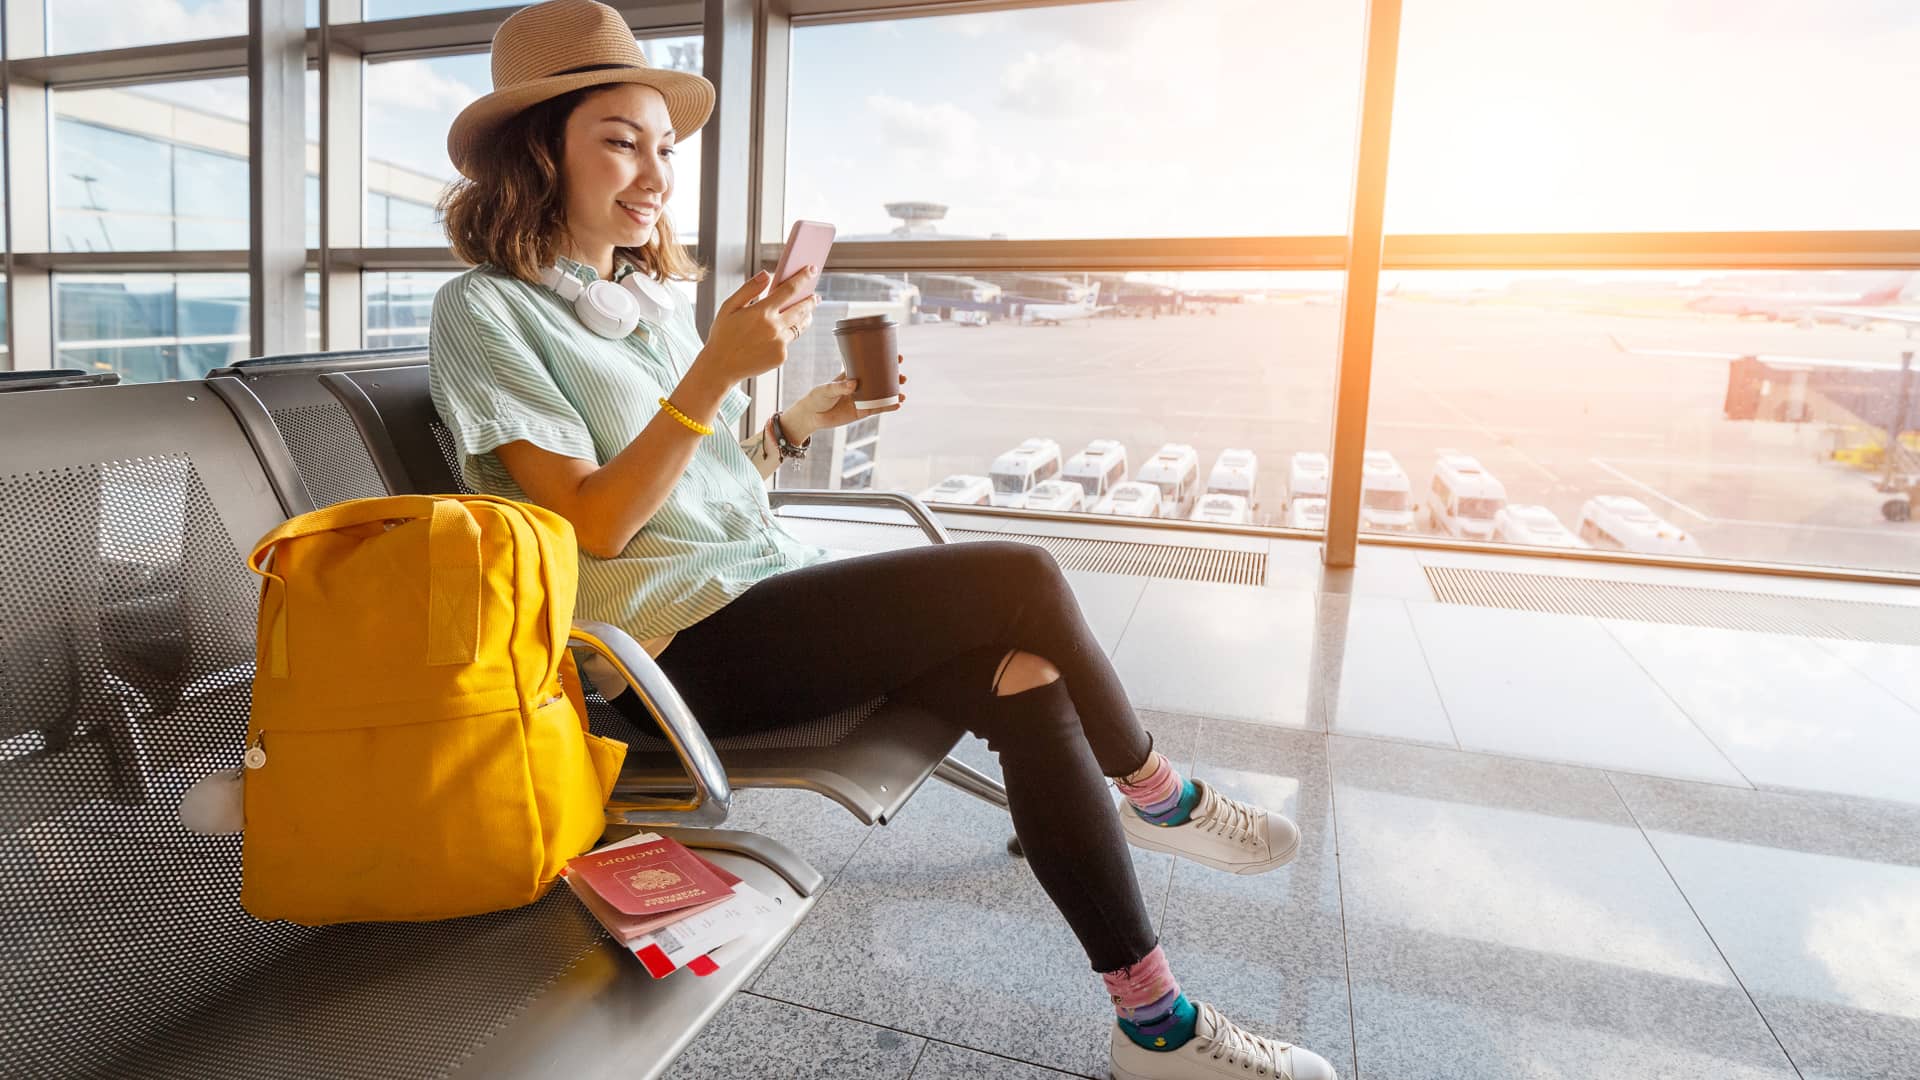 Mujer que esta a punto de embarcarse en un vuelo comprueba en su celular los ajustes del roaming de movistar